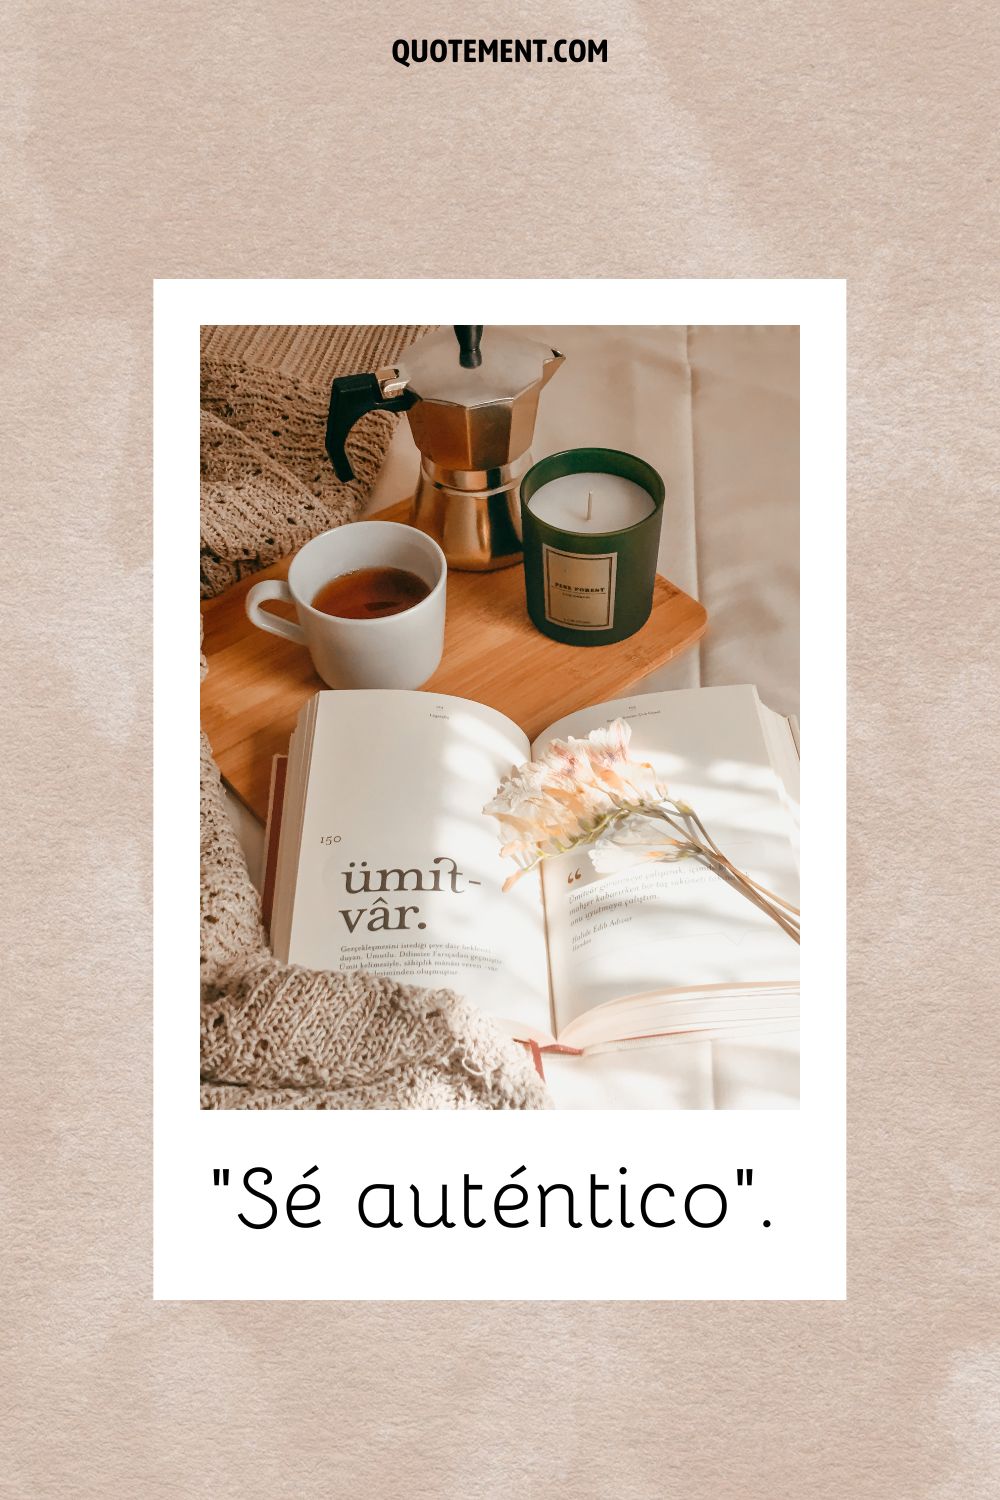 Un libro abierto junto a una mesa de café que representa una poderosa cita de dos palabras